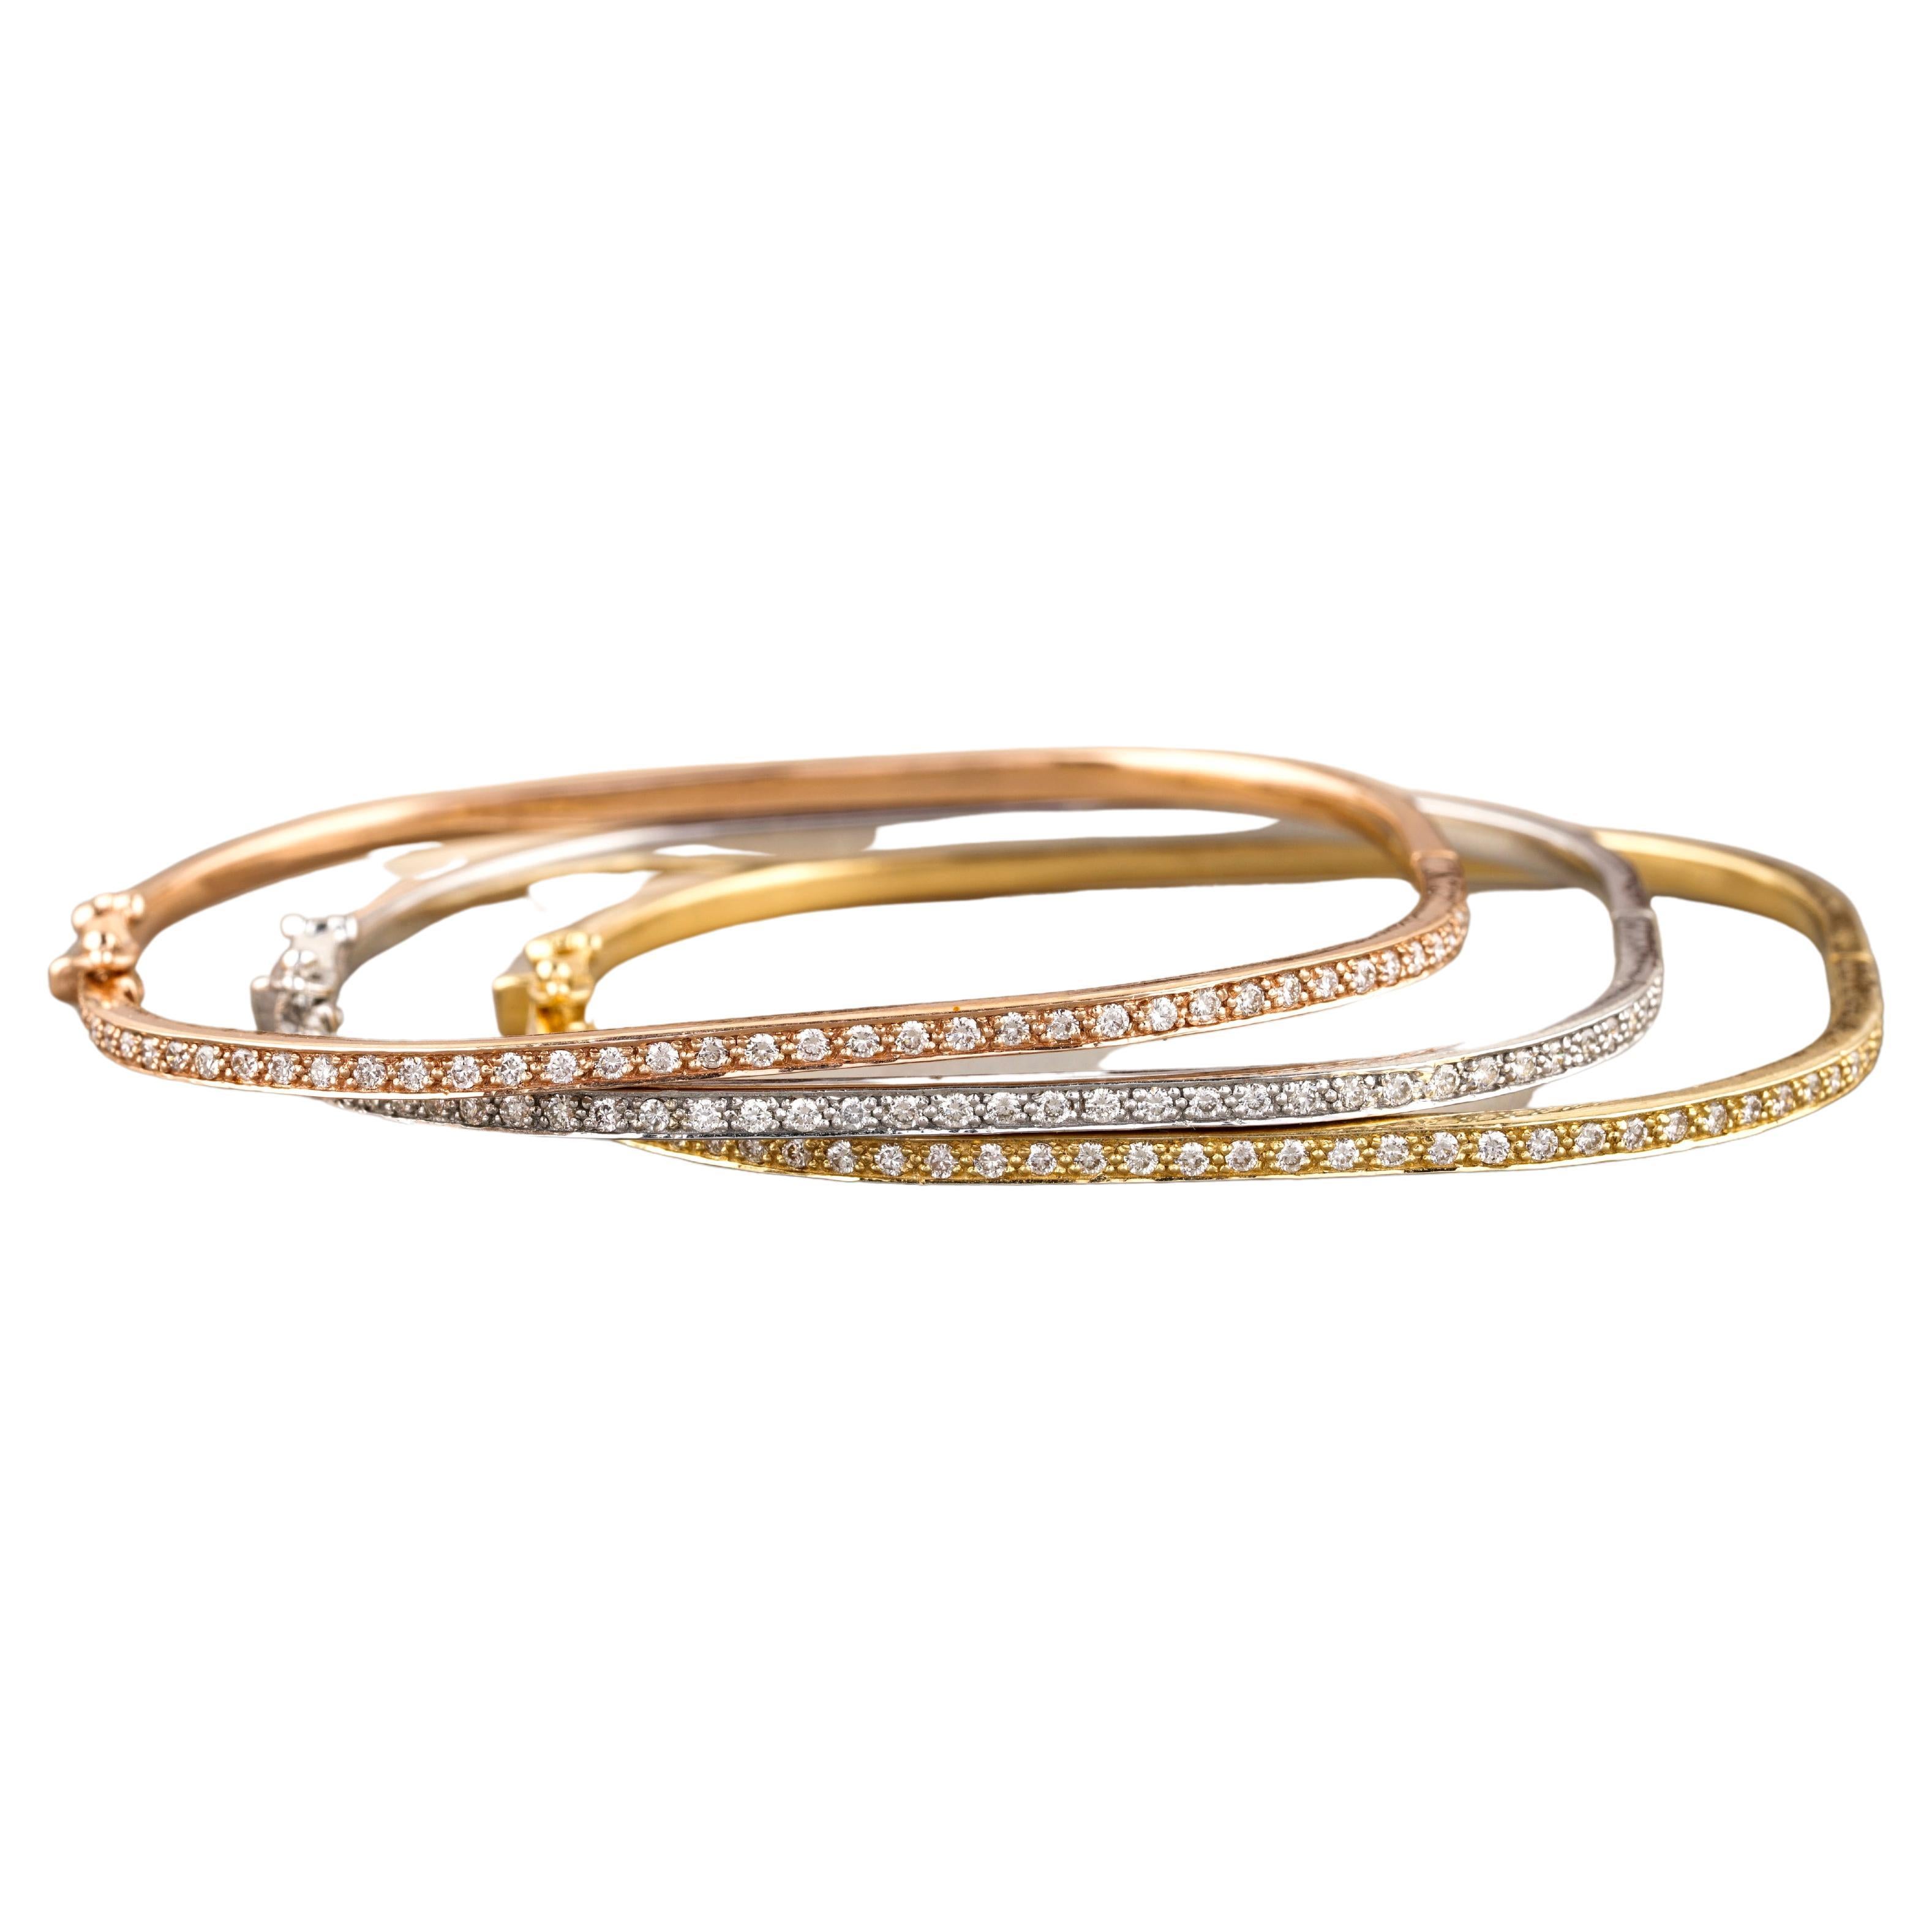 Square Shape Bangle Bracelet Set in 18k Solid Gold